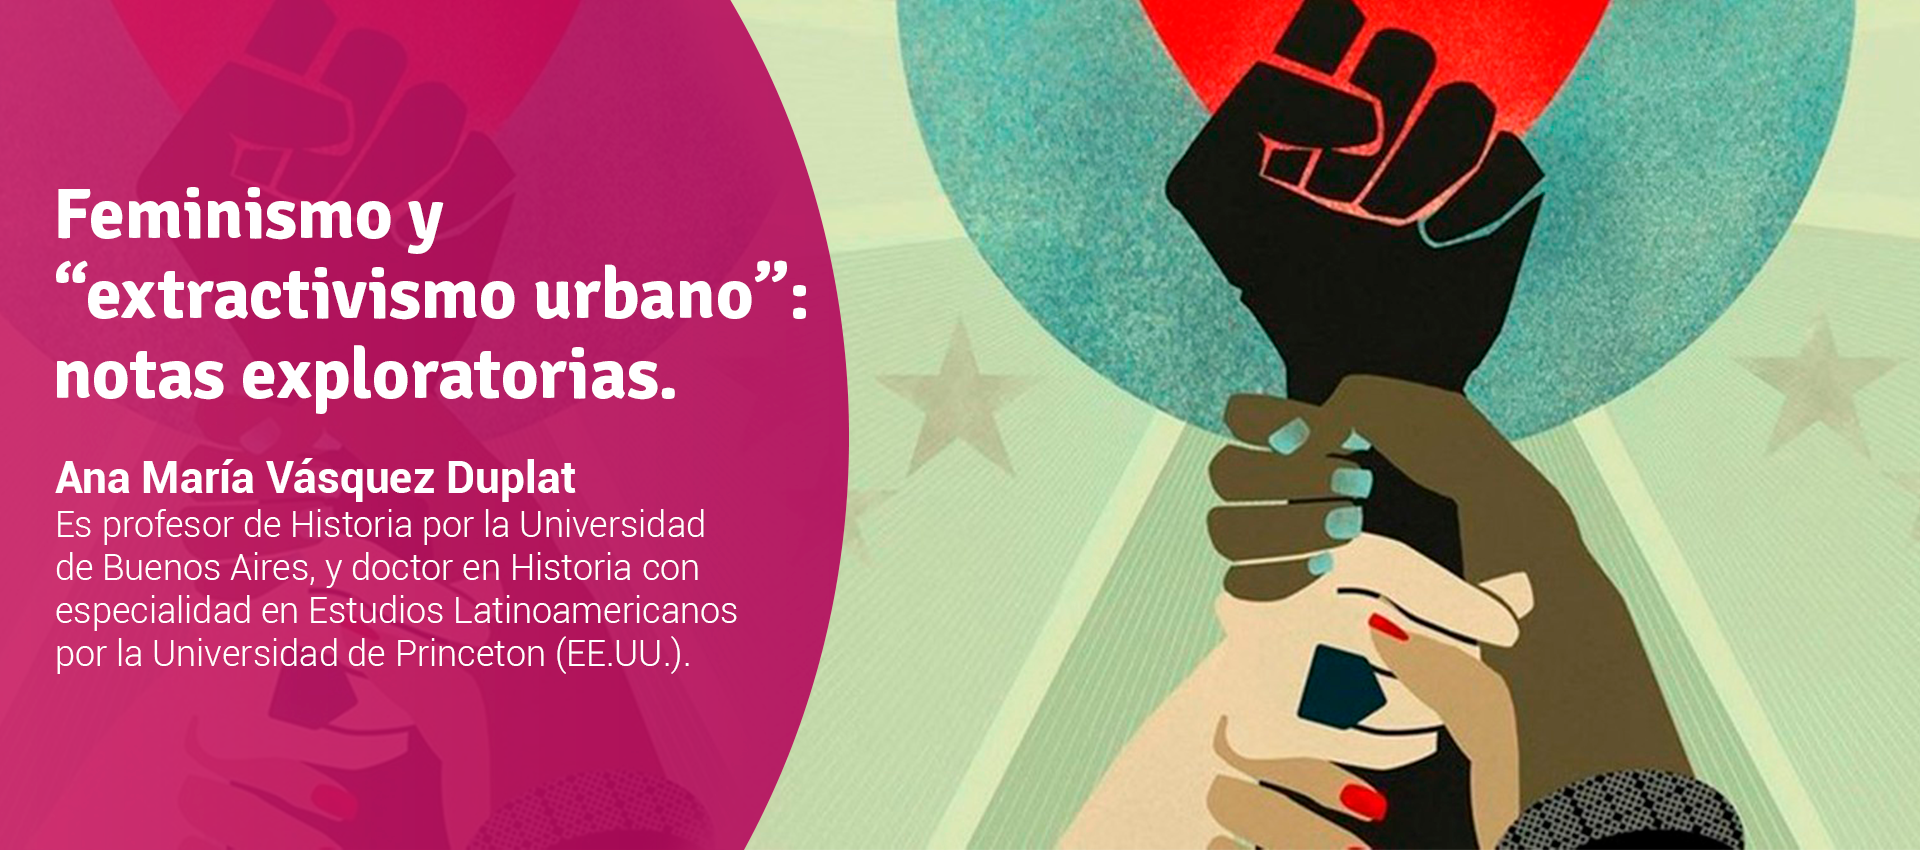 Ana María Vásquez Duplat - Feminismo y “extractivismo urbano”: notas exploratorias